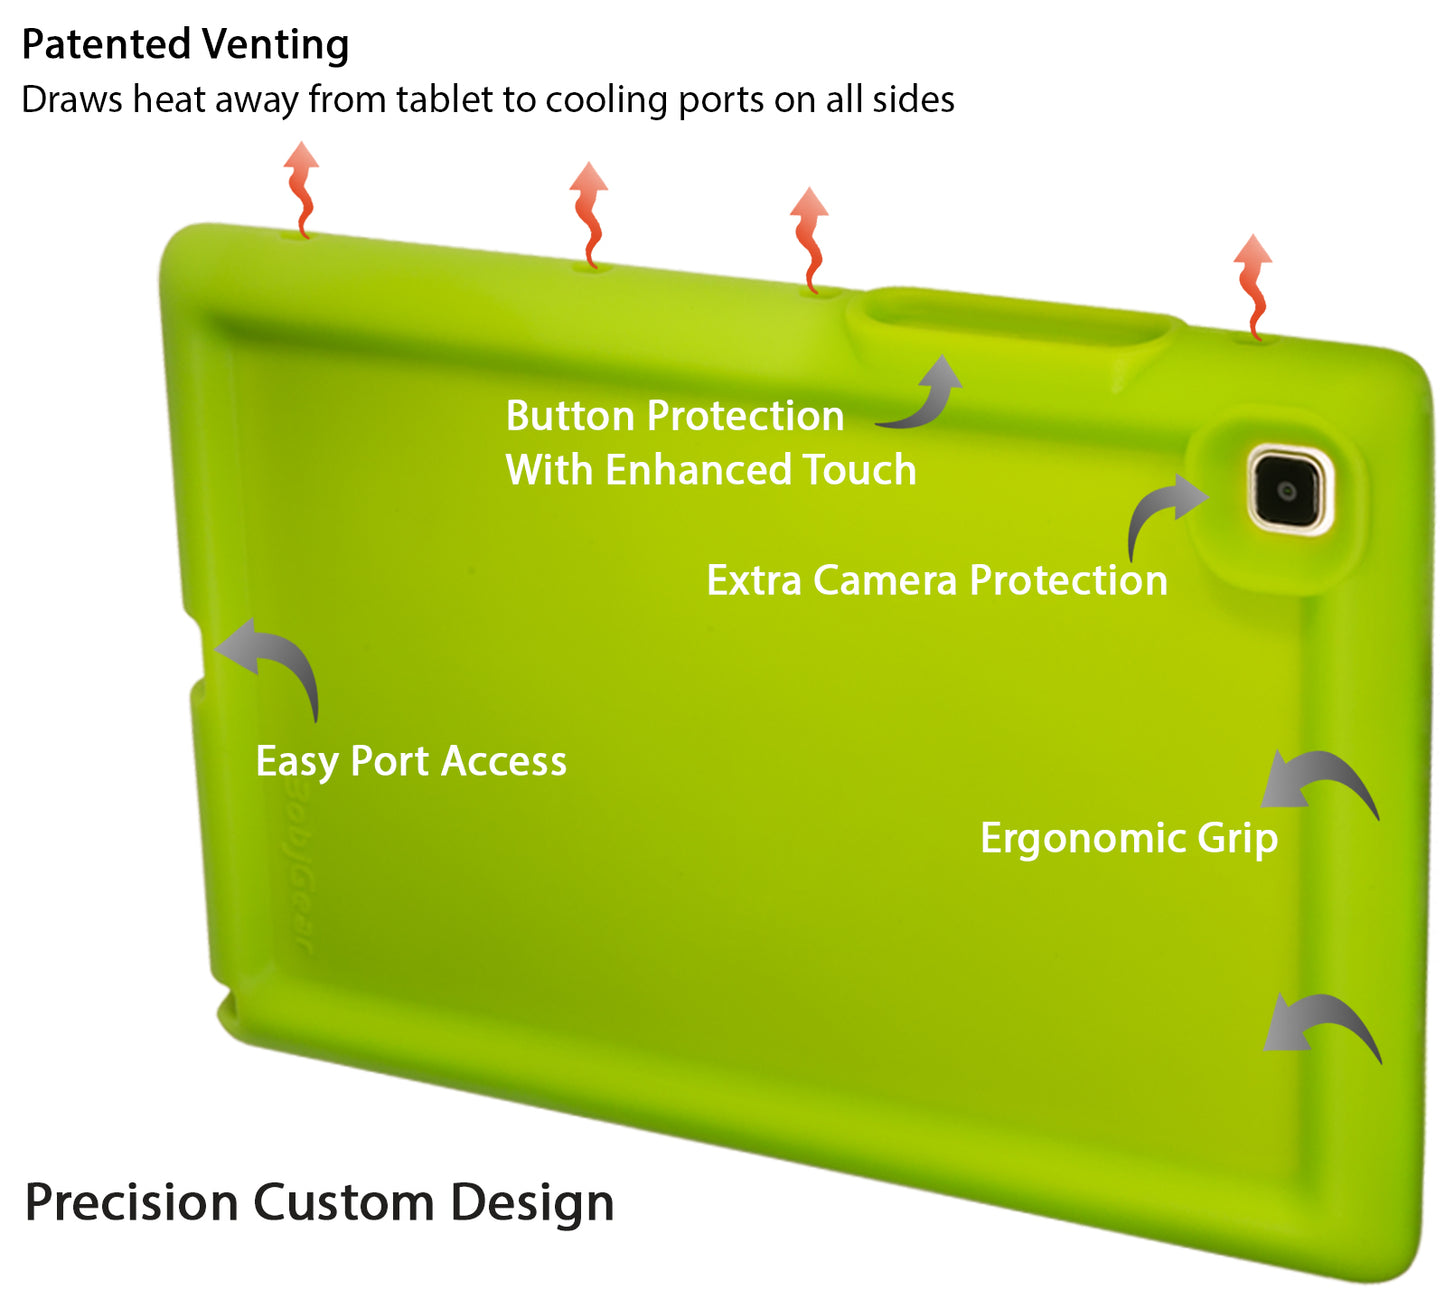 Bobj Rugged Tablet Case for Samsung Galaxy Tab A7 10.4 inch 2020 Models SM-T500, SM-T505, SM-T507 - Gotcha Green